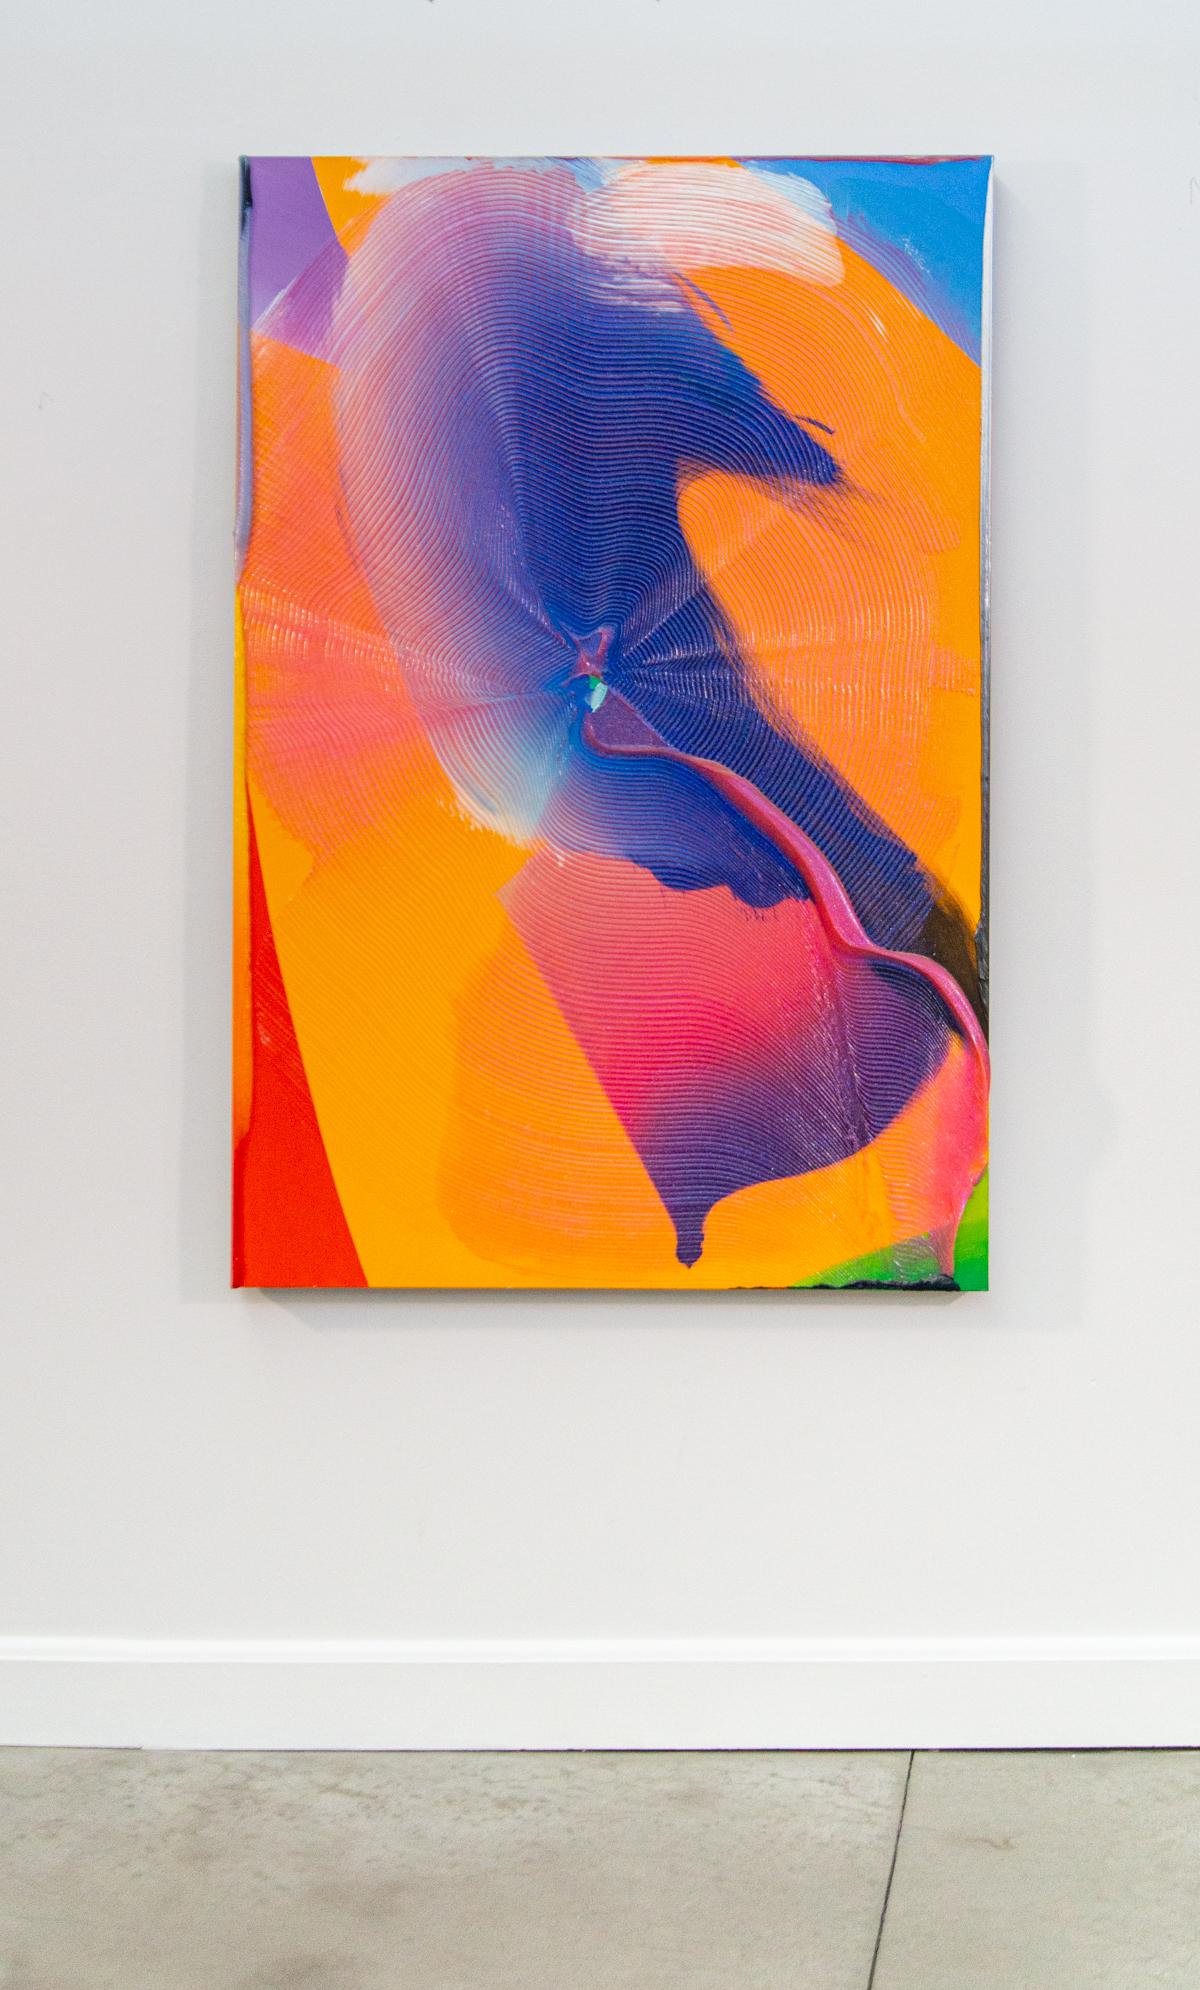 Équanimité - riche, audacieuse, colorée, empâtement, acrylique abstraite gestuelle sur toile - Painting de Joseph Drapell